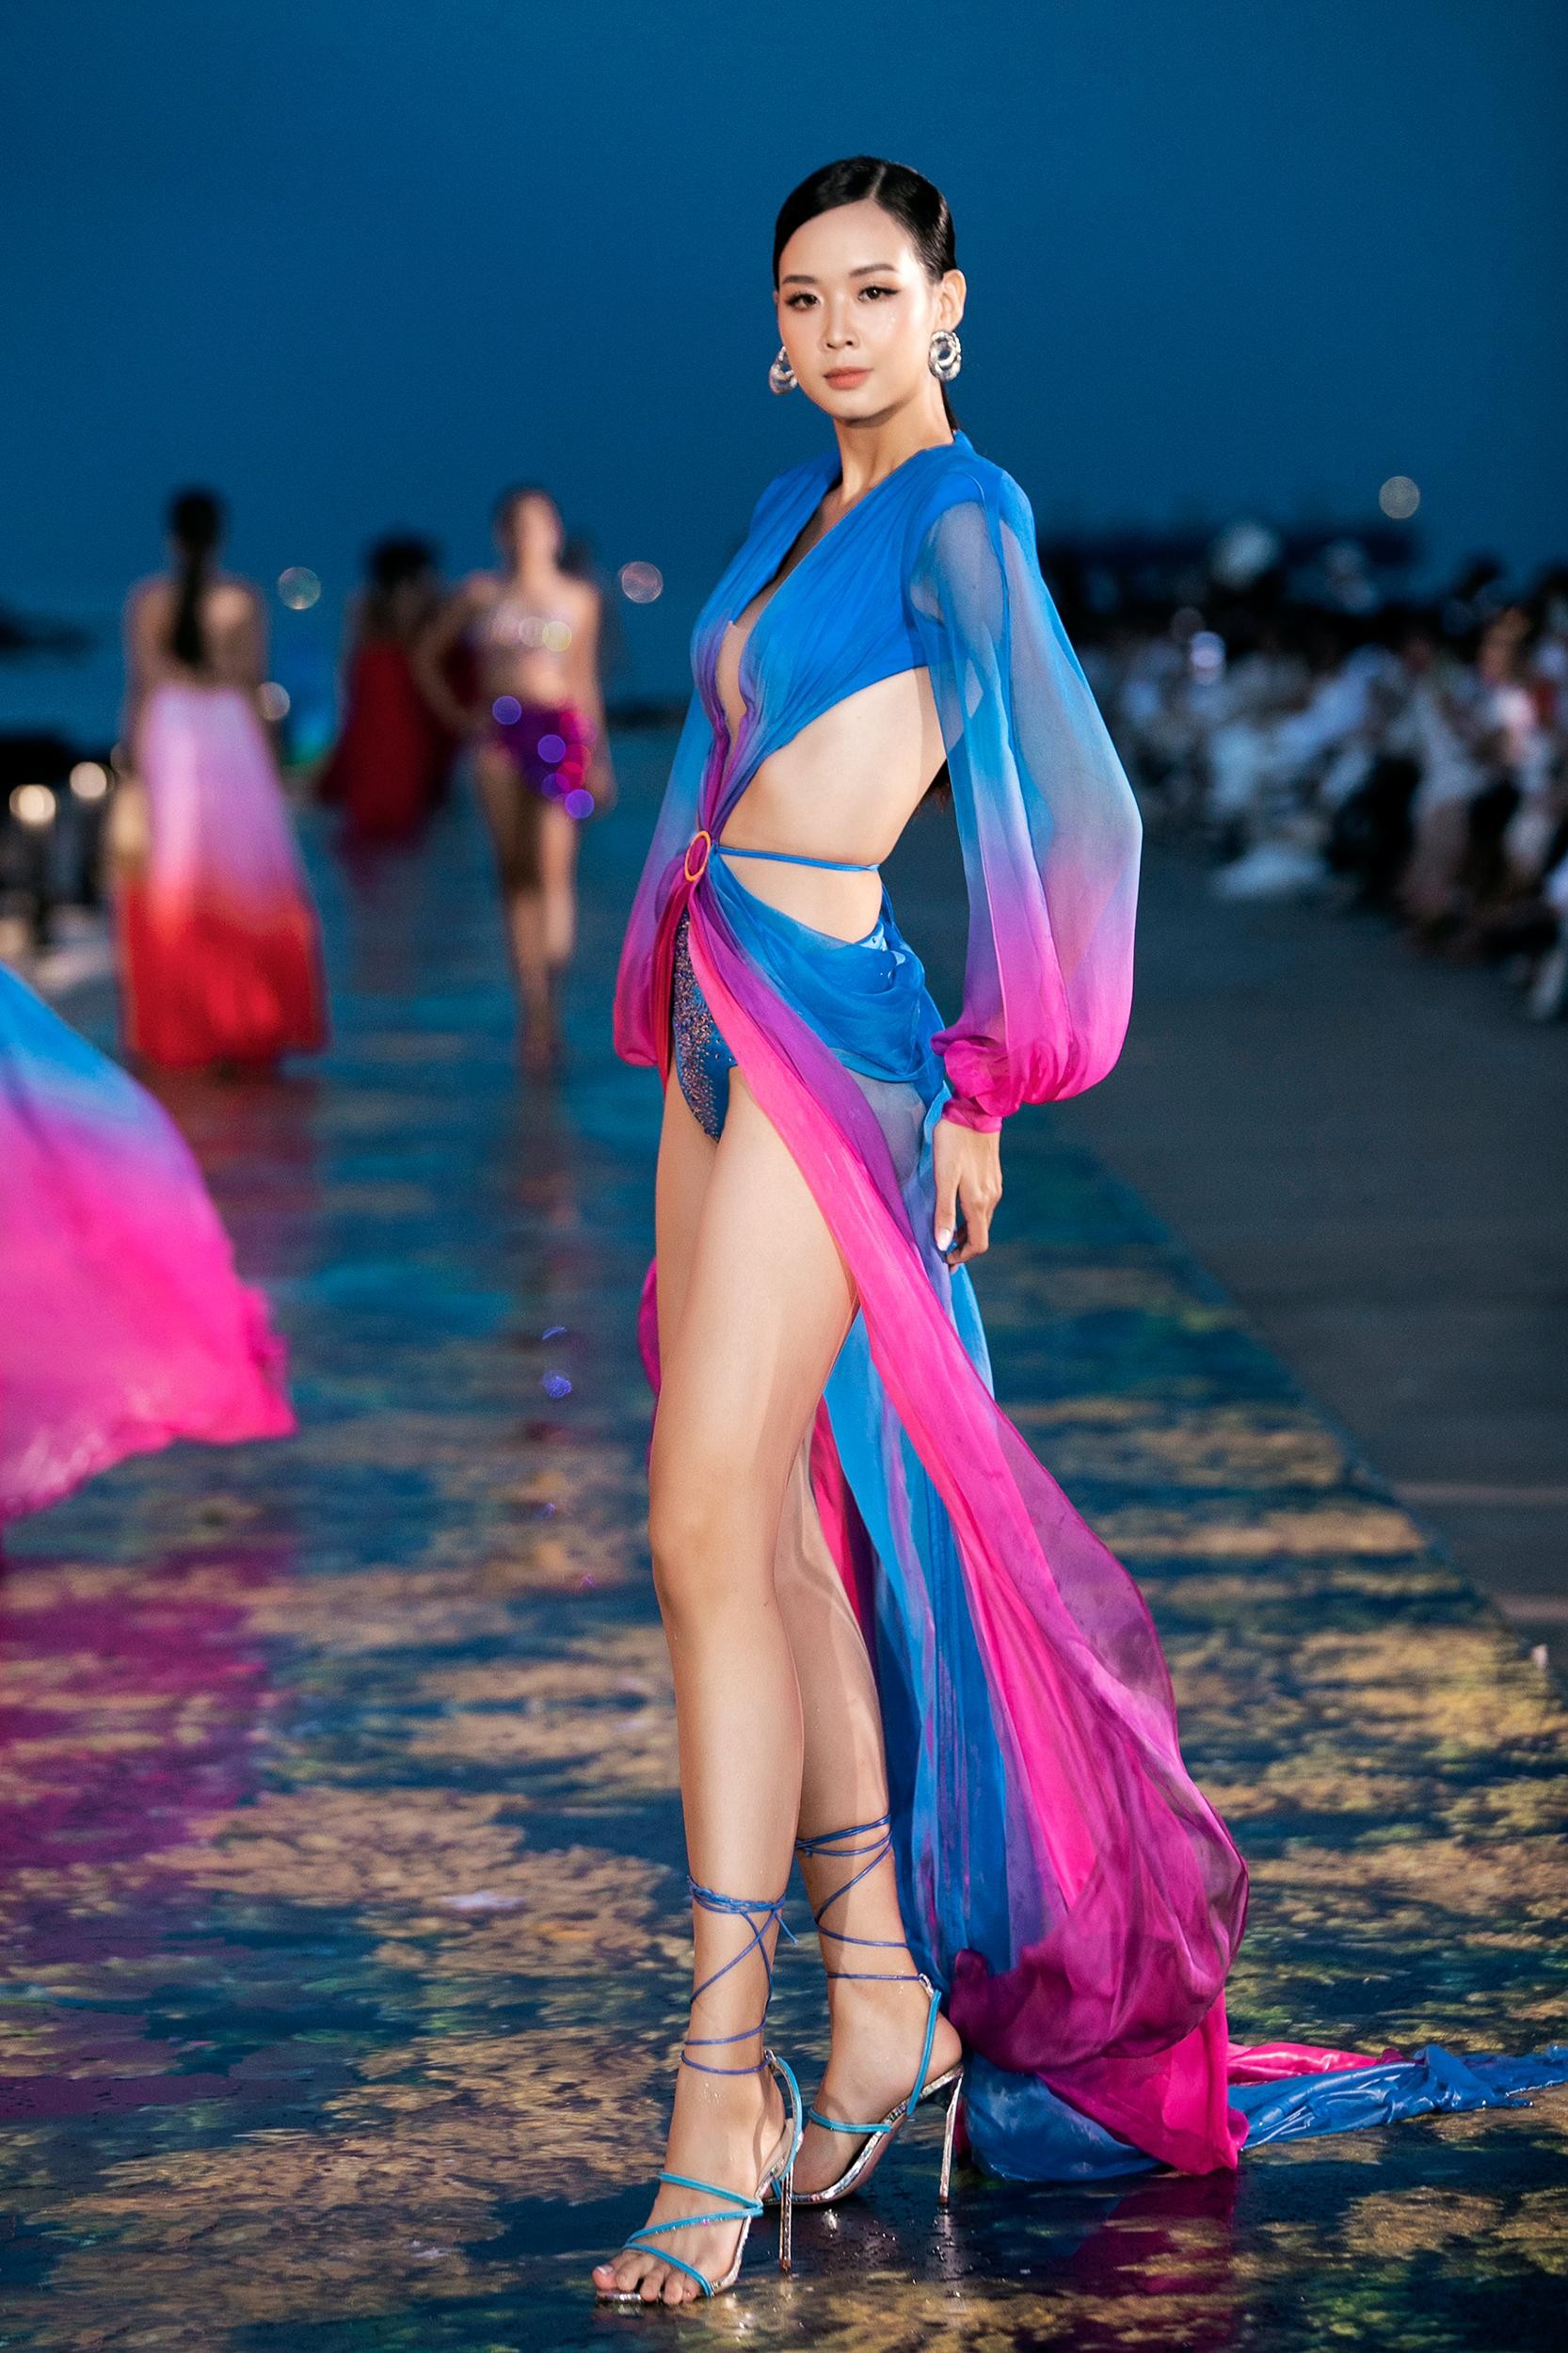 Hoa hậu Thuỳ Tiên hoá nữ thần biển cả nóng bỏng, sánh vai Lương Thuỳ Linh làm vedette - Ảnh 20.